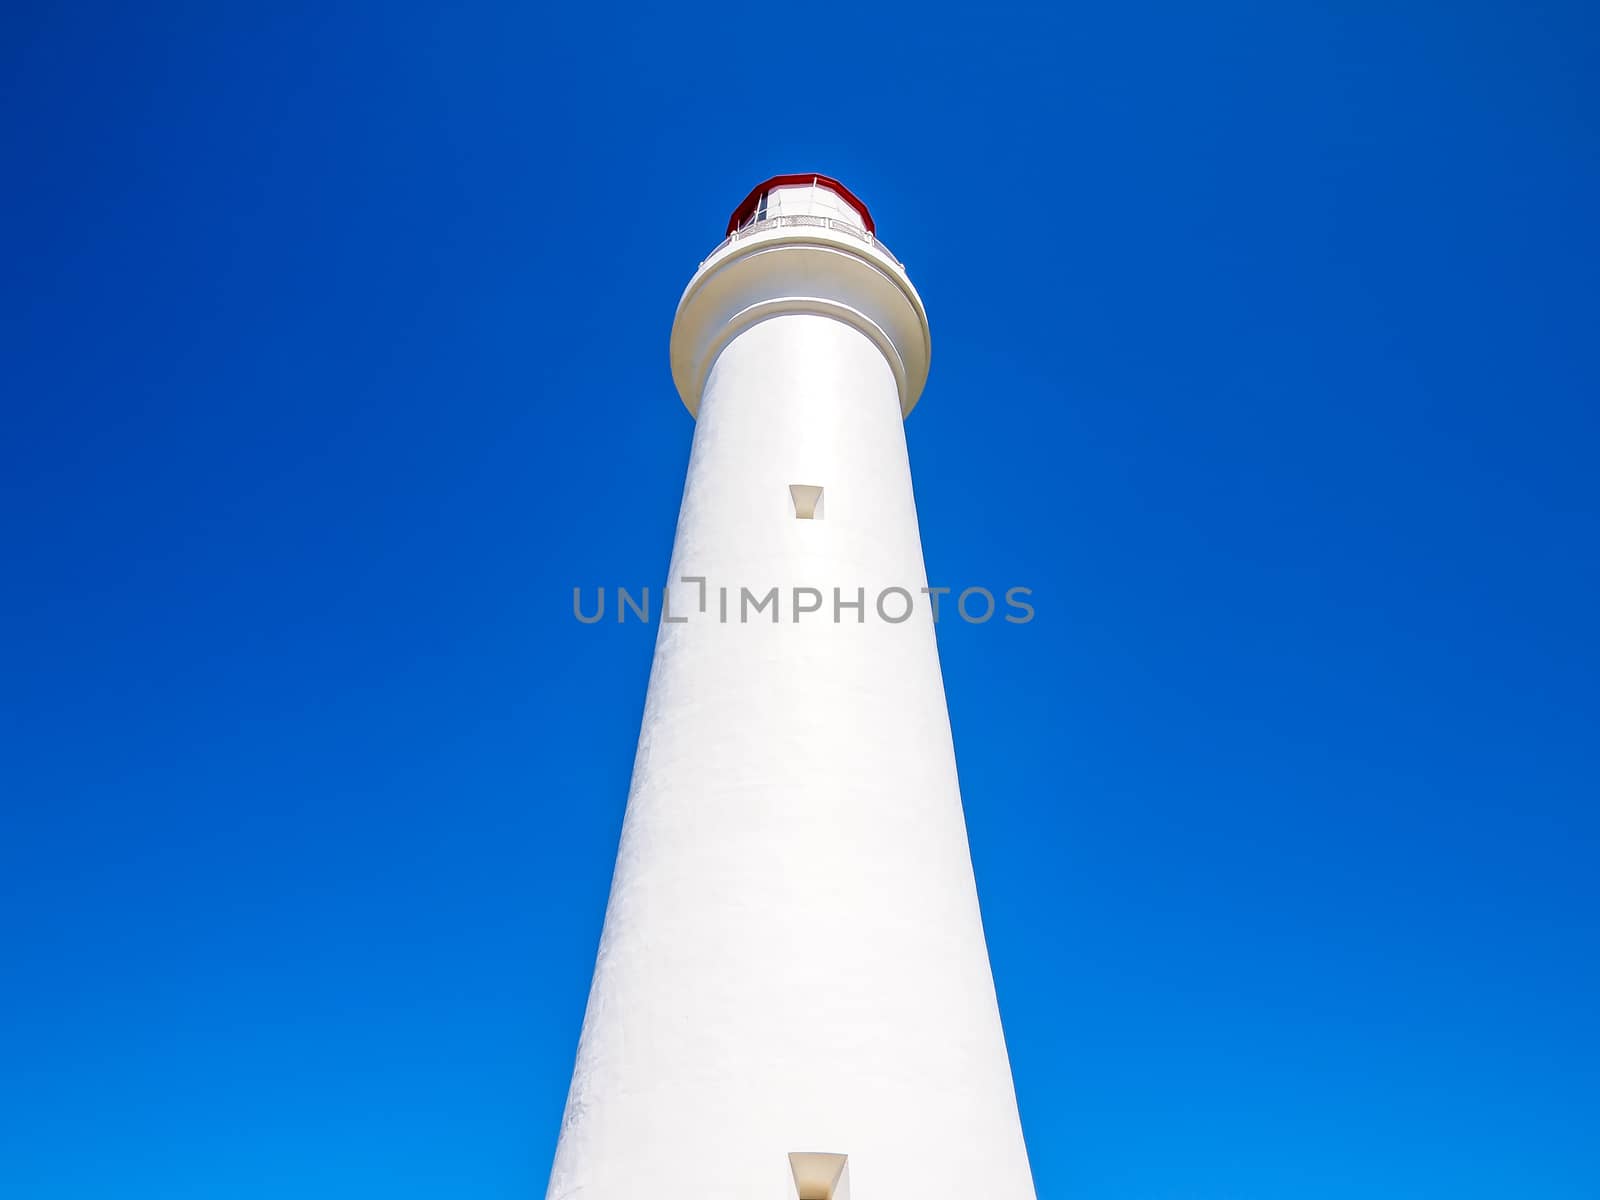 Split point lighthouse, famous landmark along the Great Ocean Road, Australia